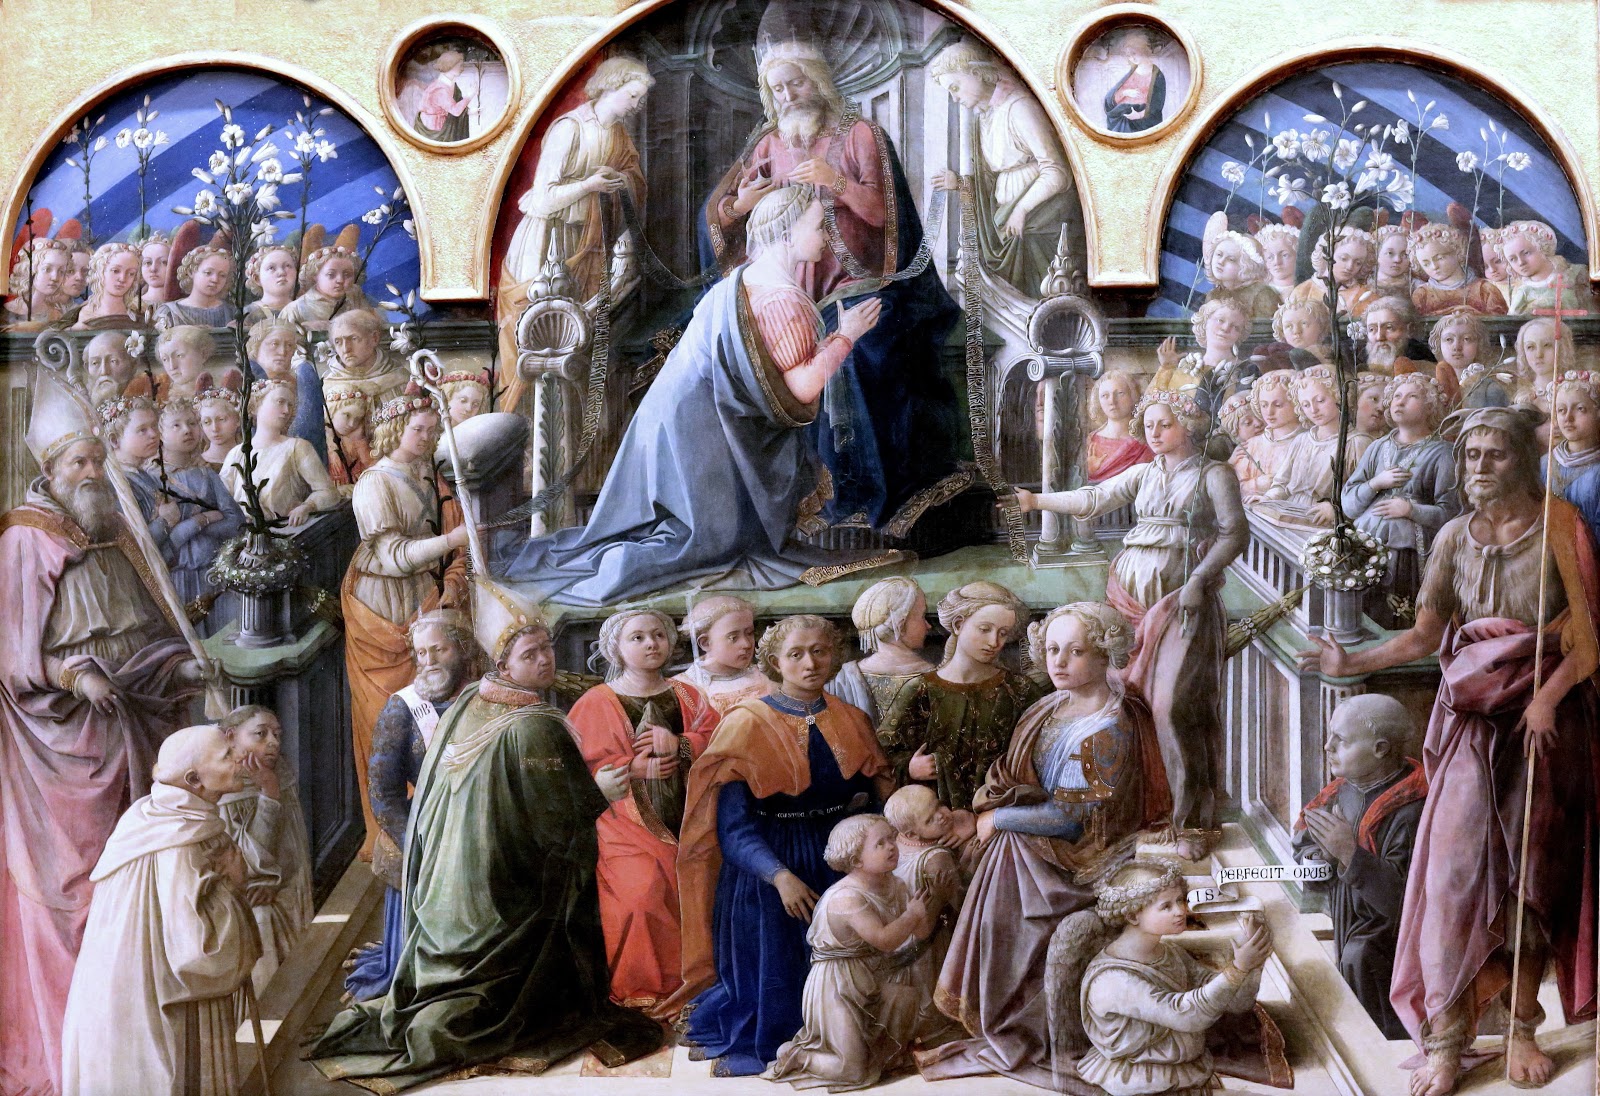 Filippino+Lippi-1457-1504 (118).jpg